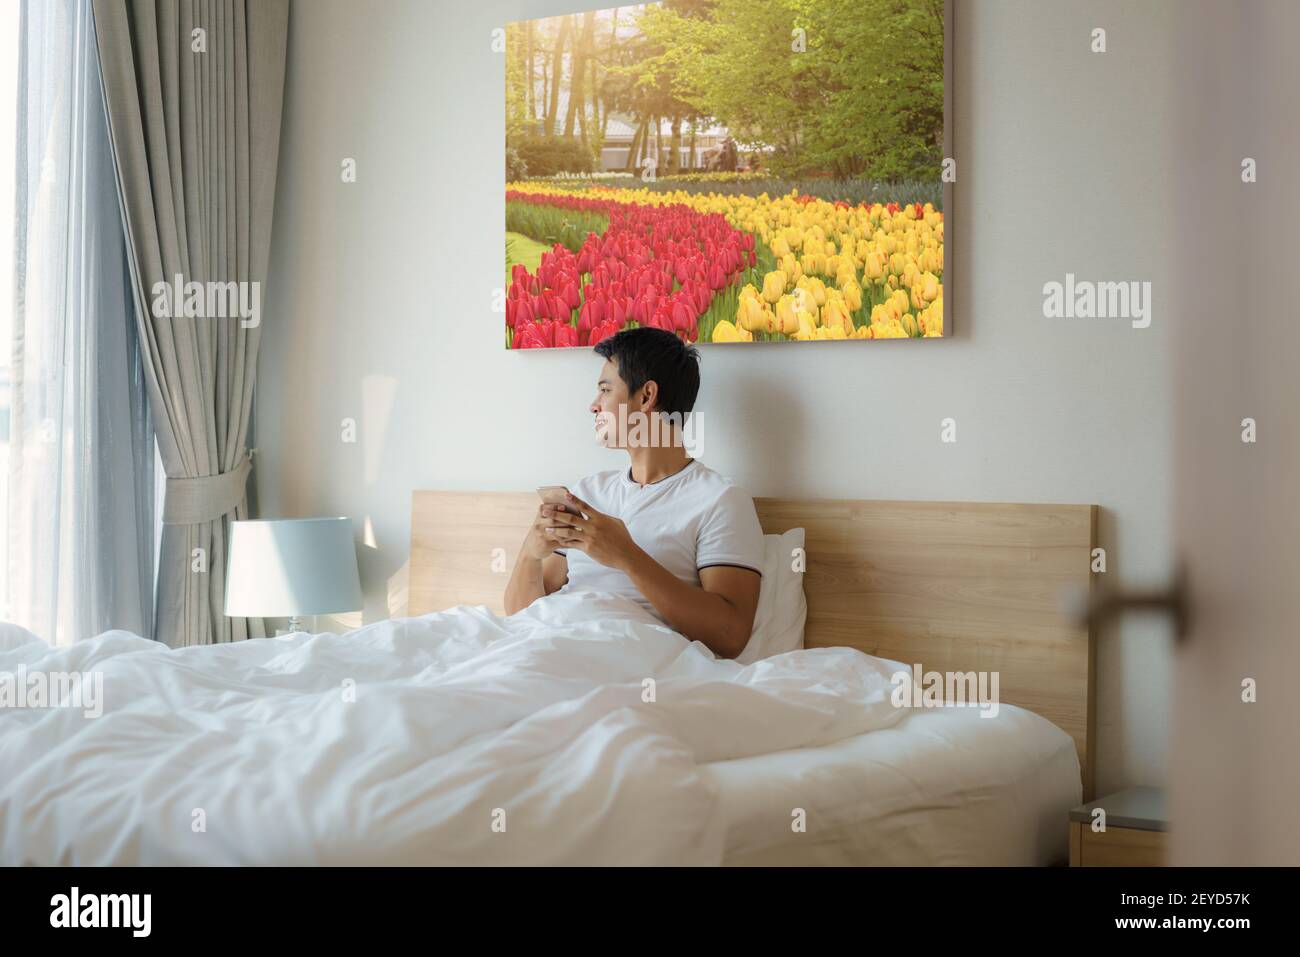 Ein asiatischer Mann sitzt mit einer weißen Decke im Bett und checkt seine E-Mails am Morgen zu Hause auf seinem Handy, bevor er duscht. Stockfoto